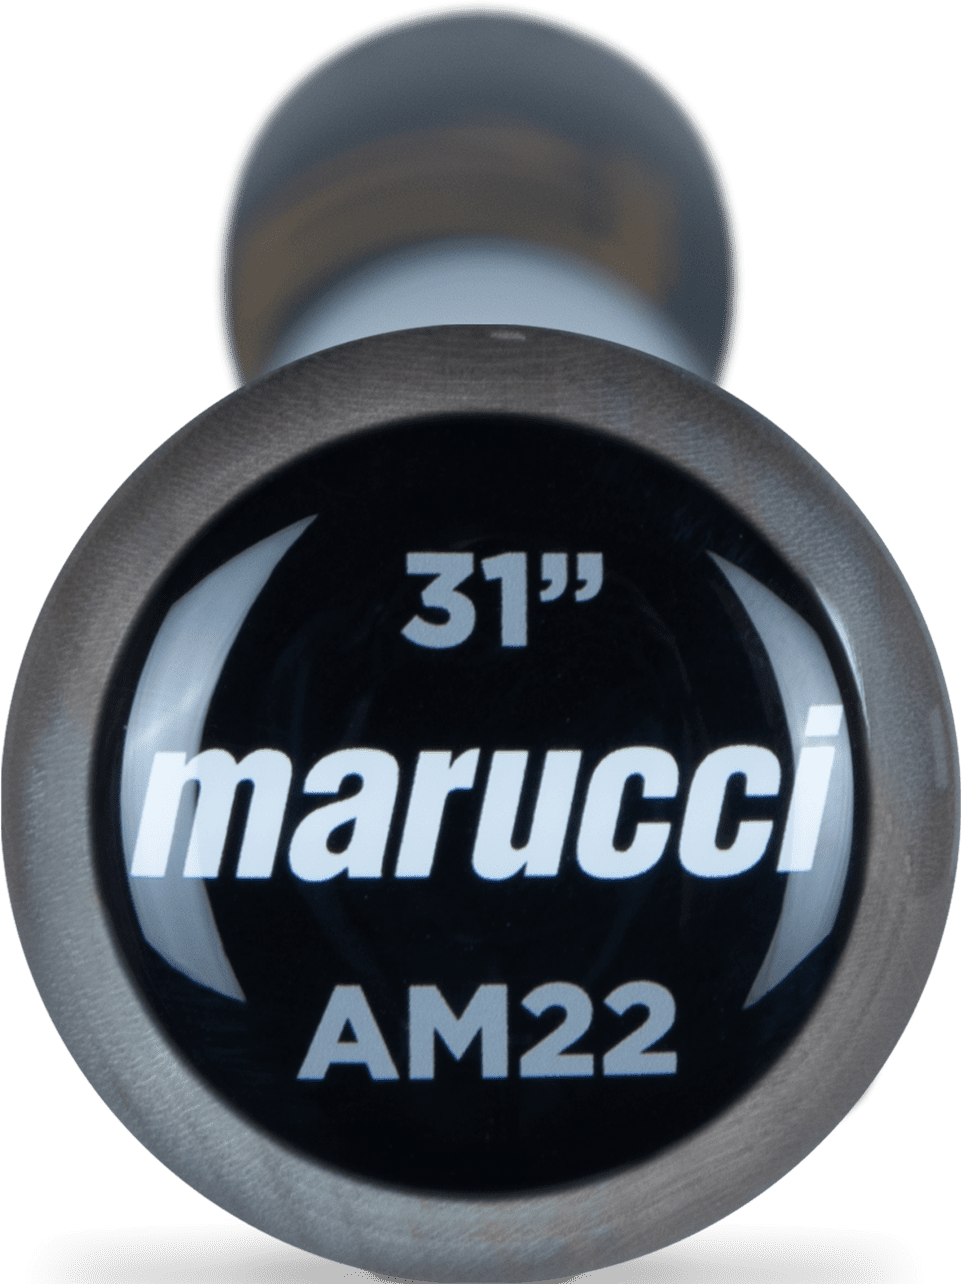 Marucci Pro AMD Maple Wood Bat MVE4AMD22 - Smoke Matte Black - HIT a Double - 3